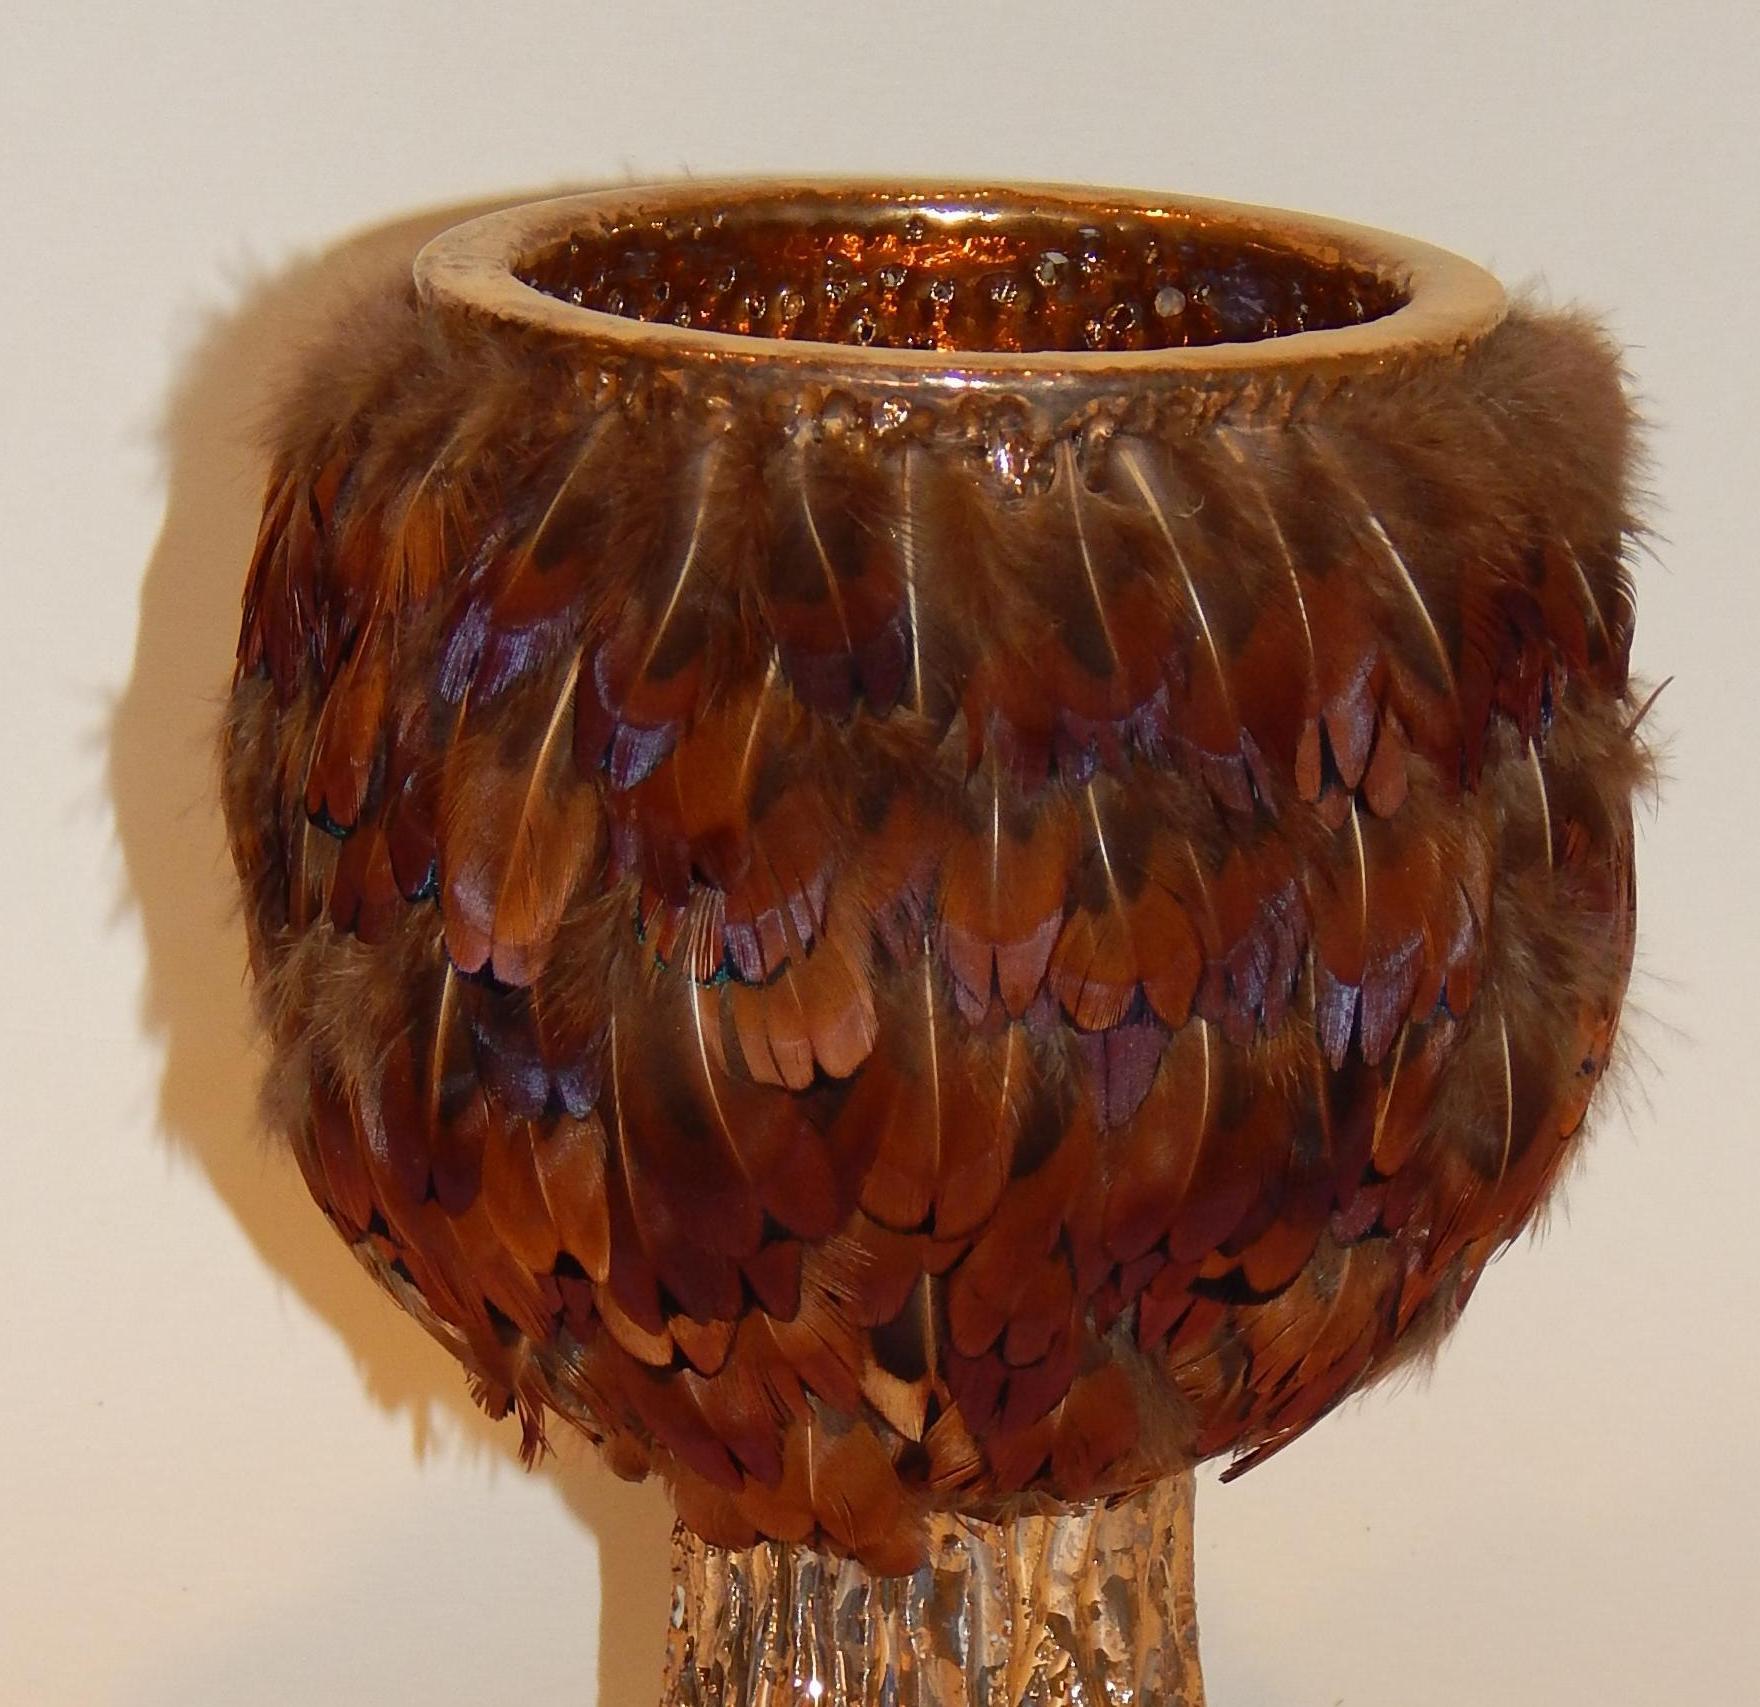 Ken Shores Kunsttöpferei Chalice Form Fetisch Topf mit aufgesetzten Federn.
Diese schöne Keramikvase ist mit einer goldfarbenen irisierten Glasur und aufgesetzten Federn versehen.
Präsentiert in einer Plexiglasbox. Ausgezeichneter Zustand ohne